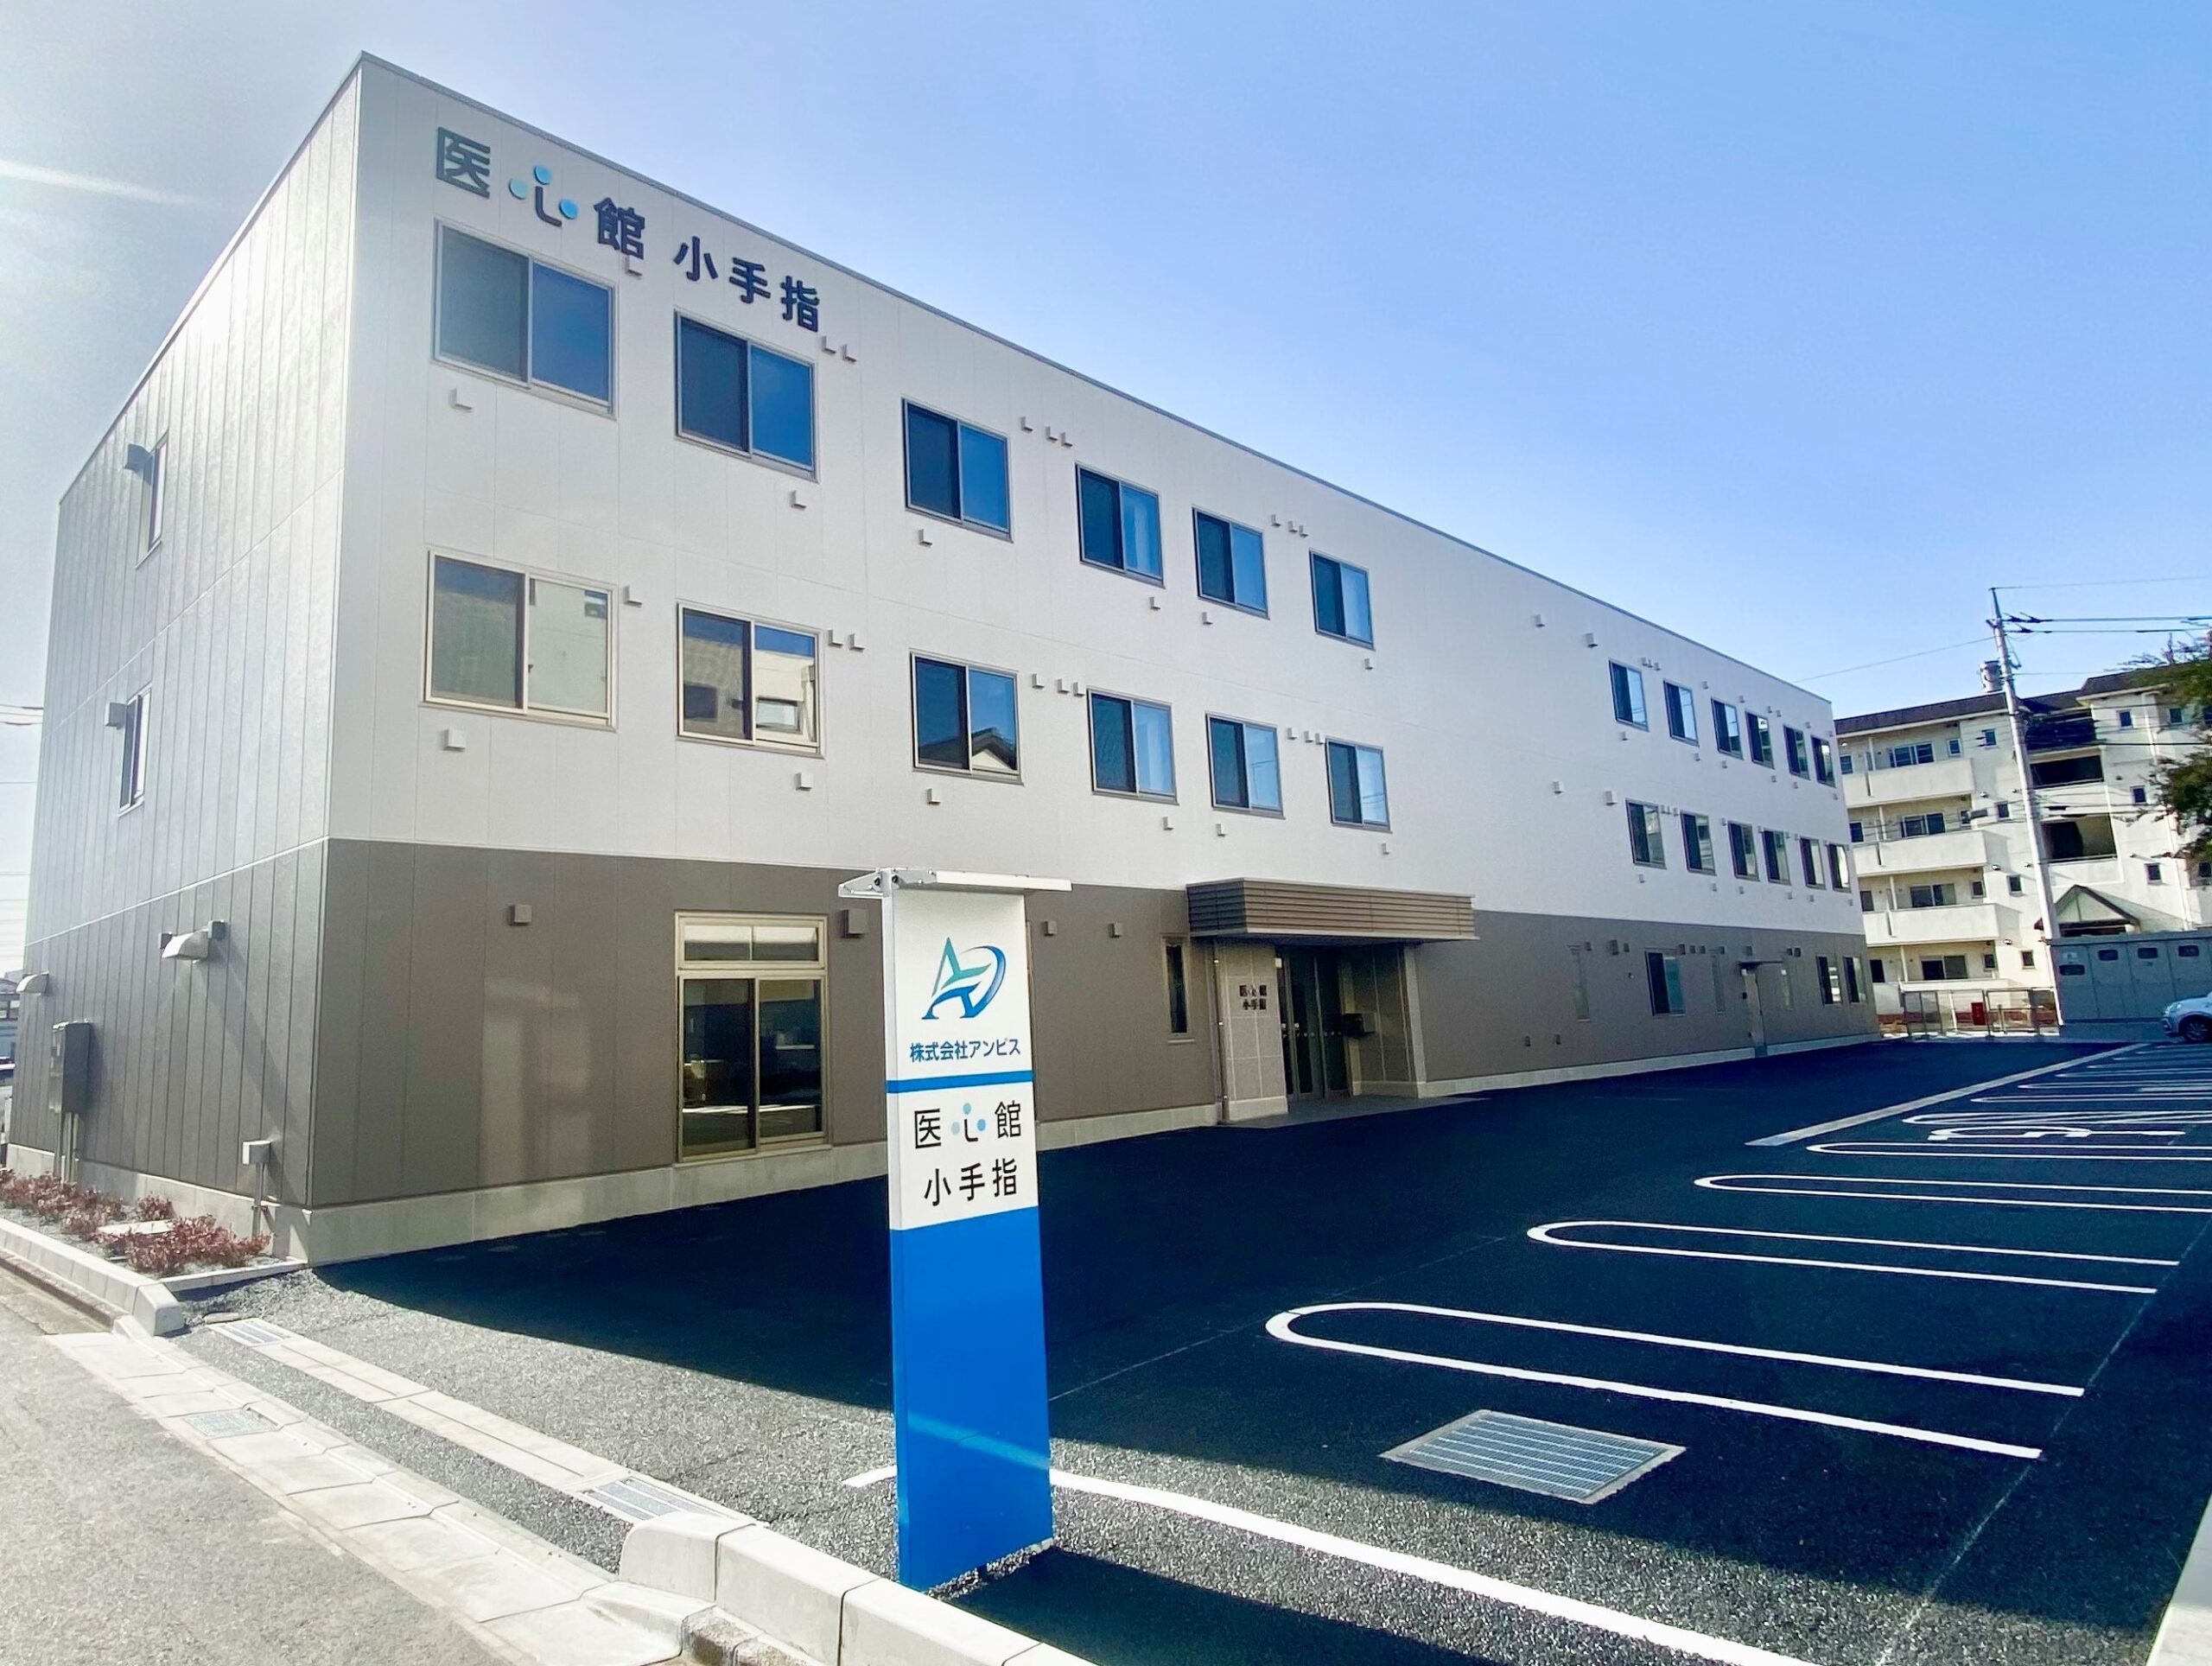 埼玉県では14施設目となる 有料老人ホーム「医心館 小手指」をオープンしました